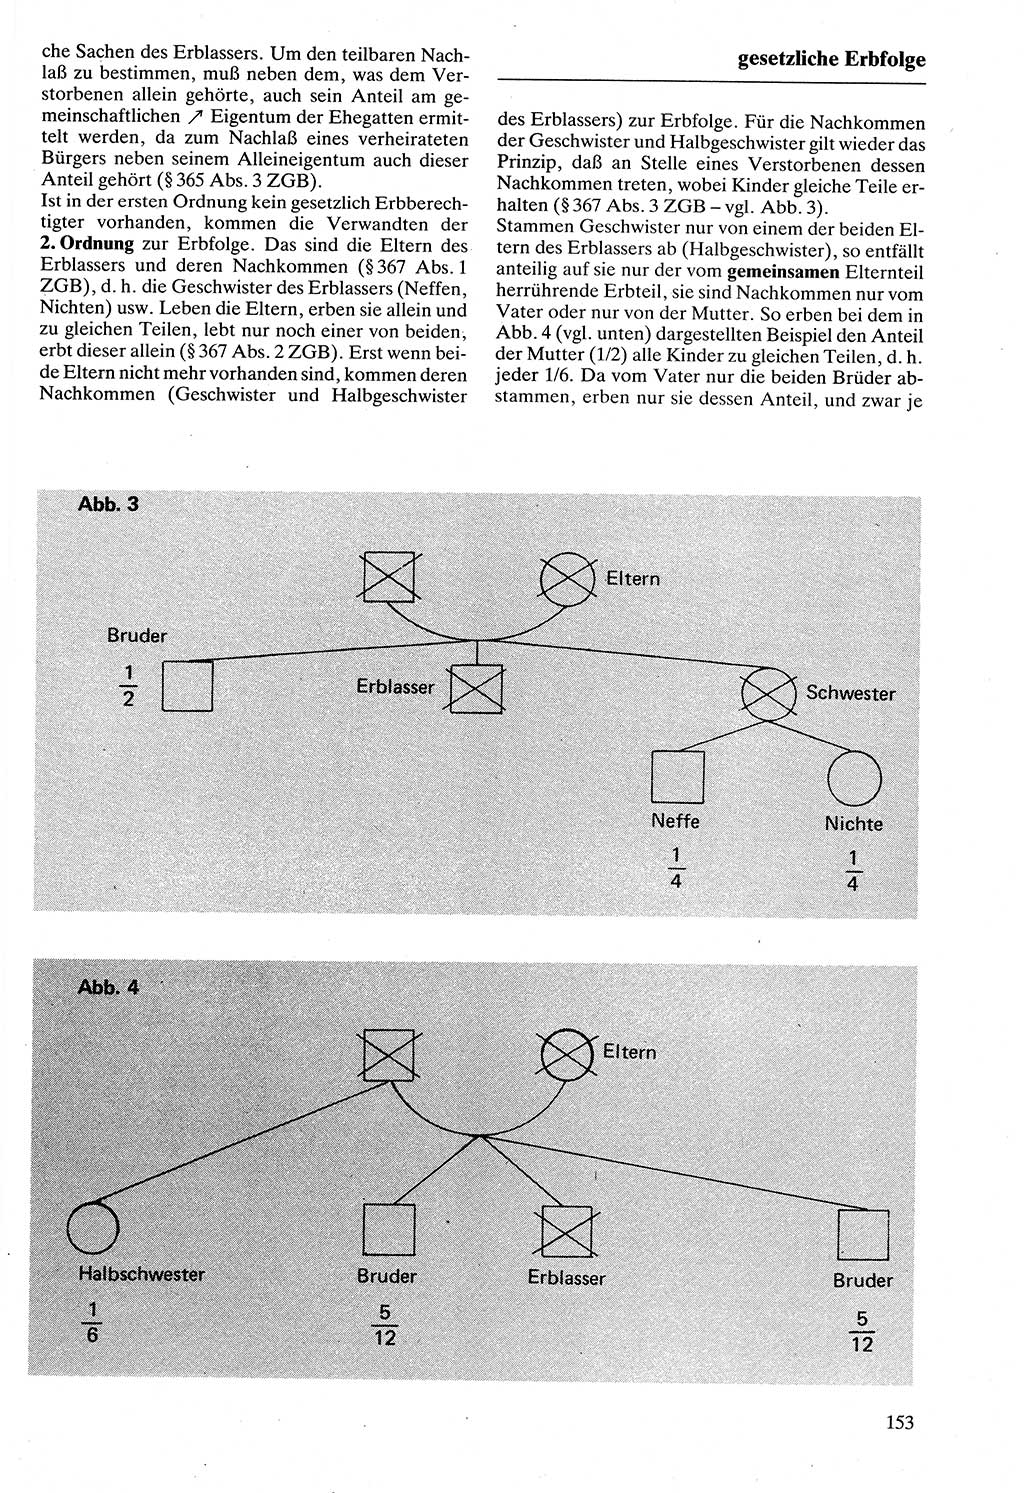 Rechtslexikon [Deutsche Demokratische Republik (DDR)] 1988, Seite 153 (Rechtslex. DDR 1988, S. 153)